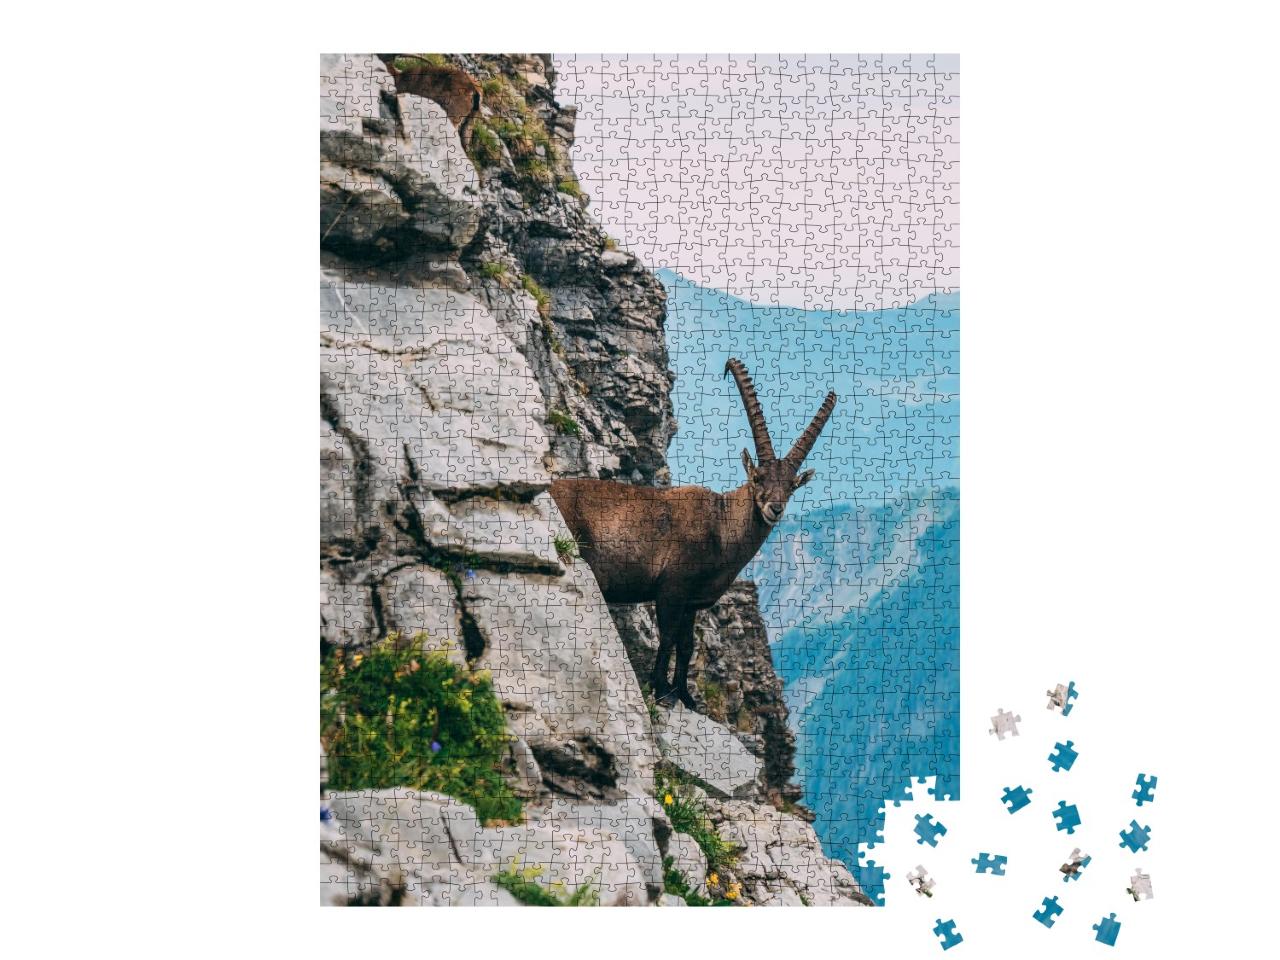 Puzzle de 1000 pièces « Bouquetin des Alpes dans un paysage de montagne sur un rocher escarpé »